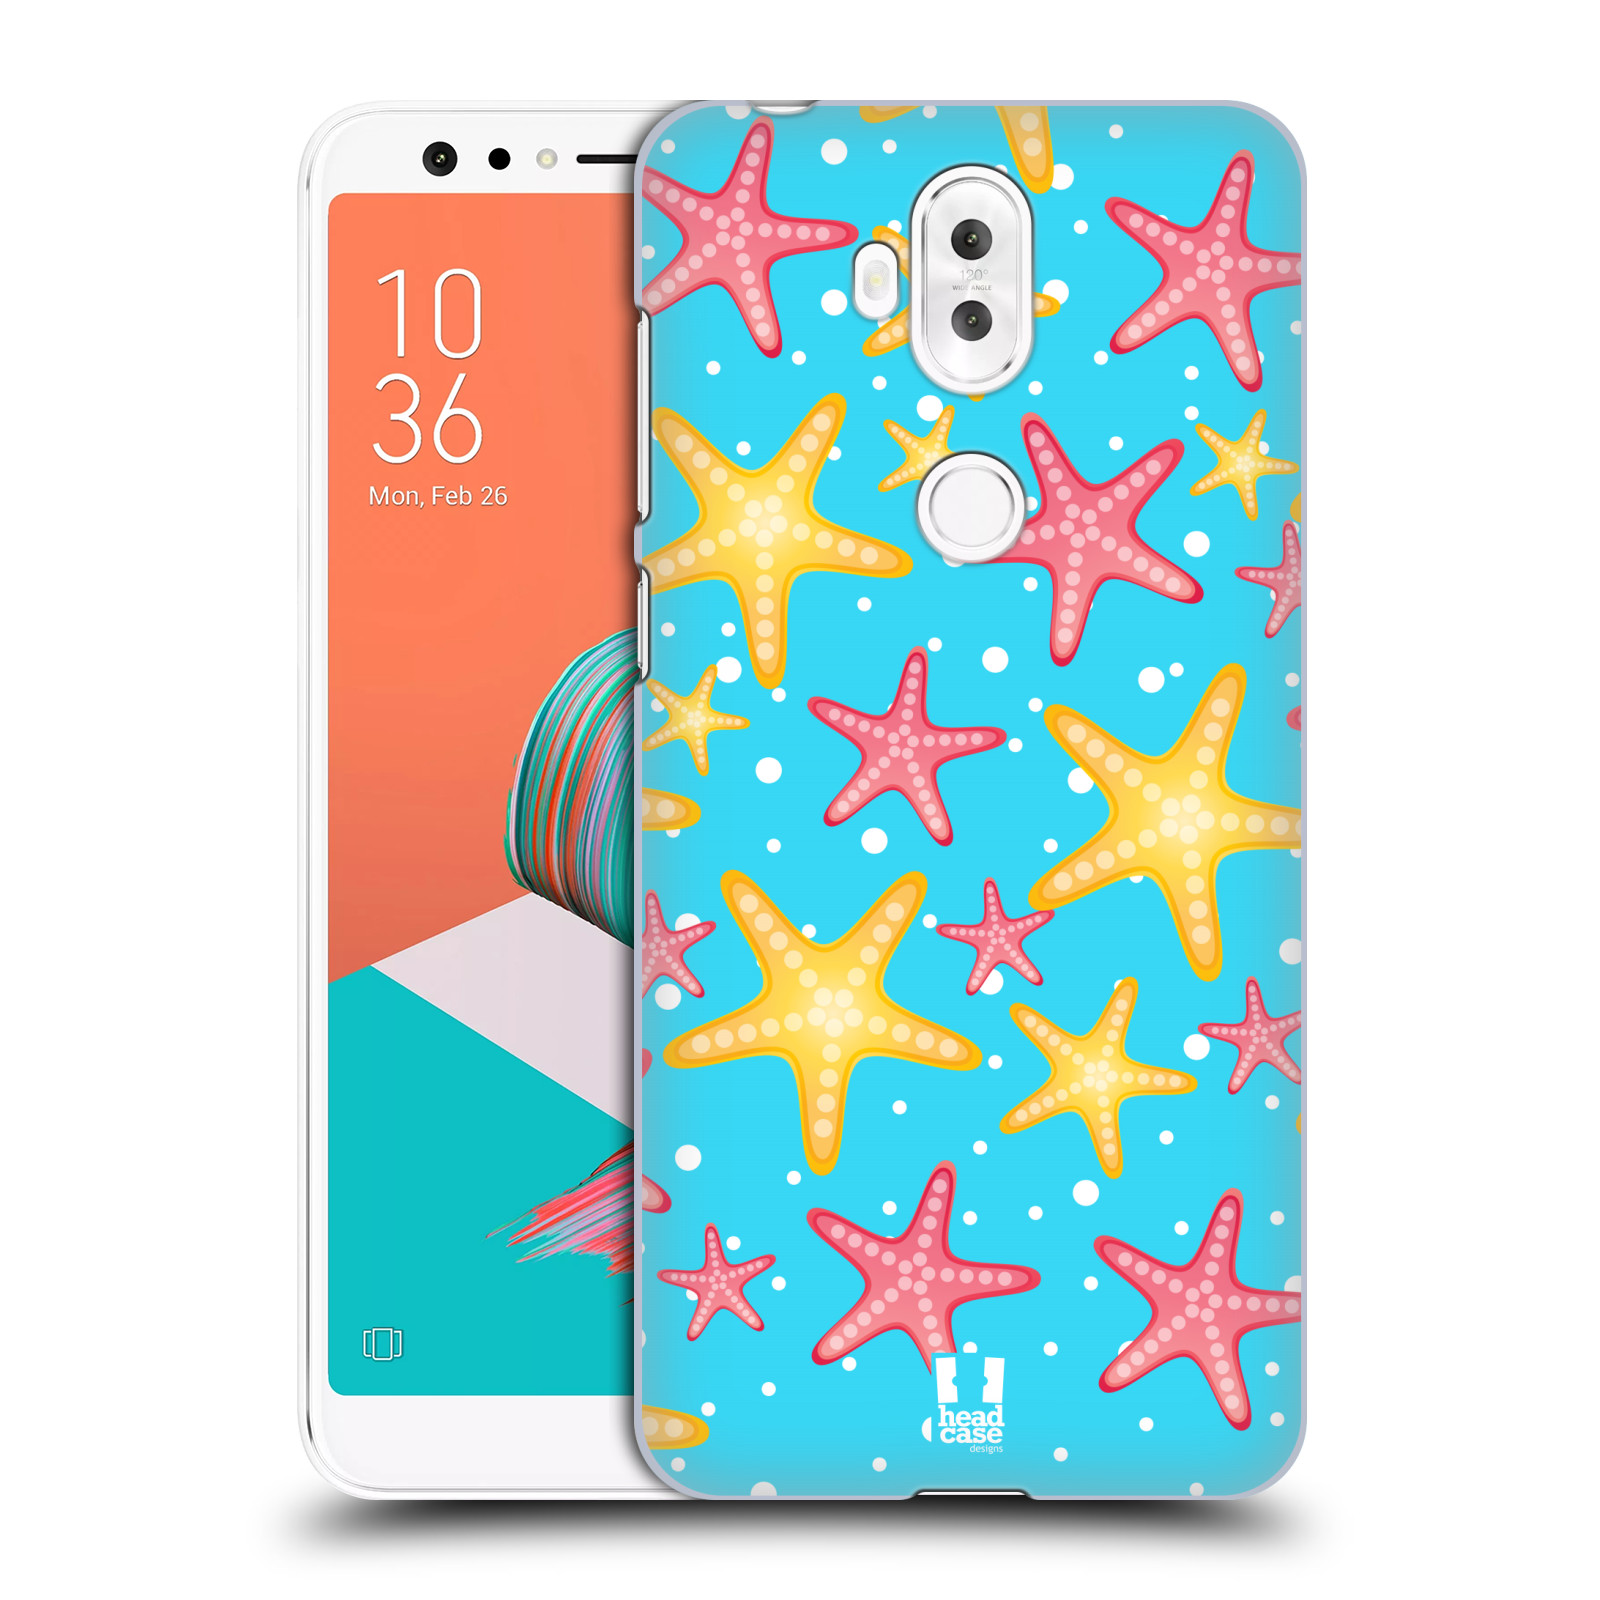 Zadní obal pro mobil Asus Zenfone 5 Lite ZC600KL - HEAD CASE - kreslený mořský vzor hvězda